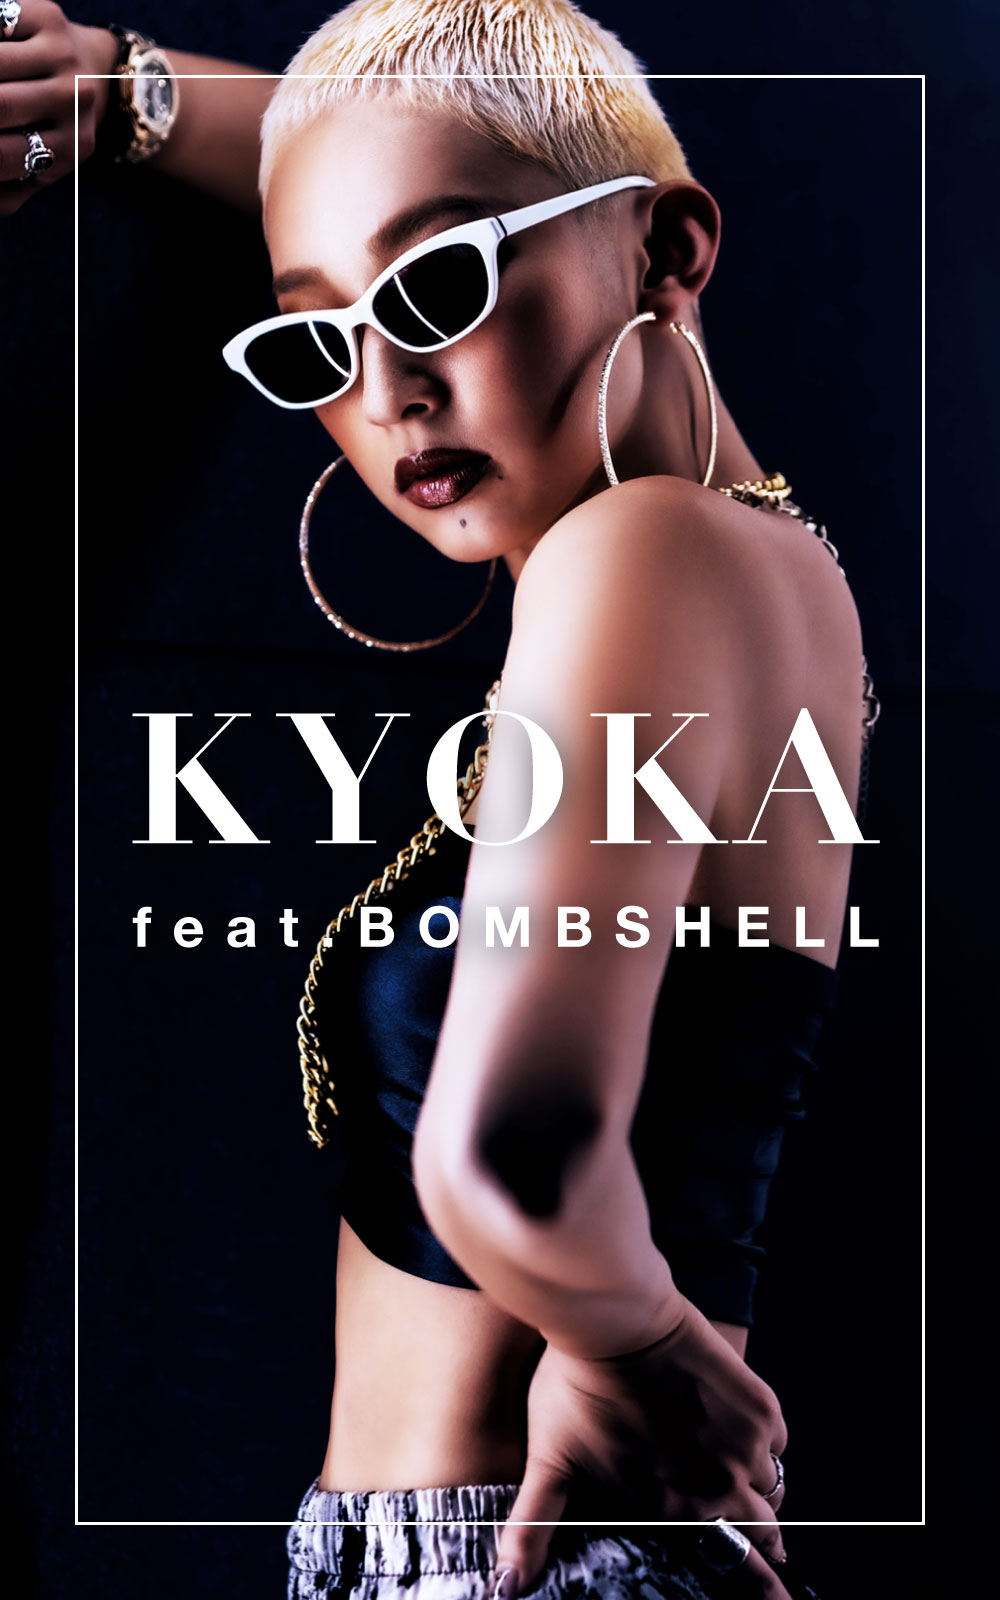 ダンス衣装通販のボムシェル[bombshell]・kyoka-01-01